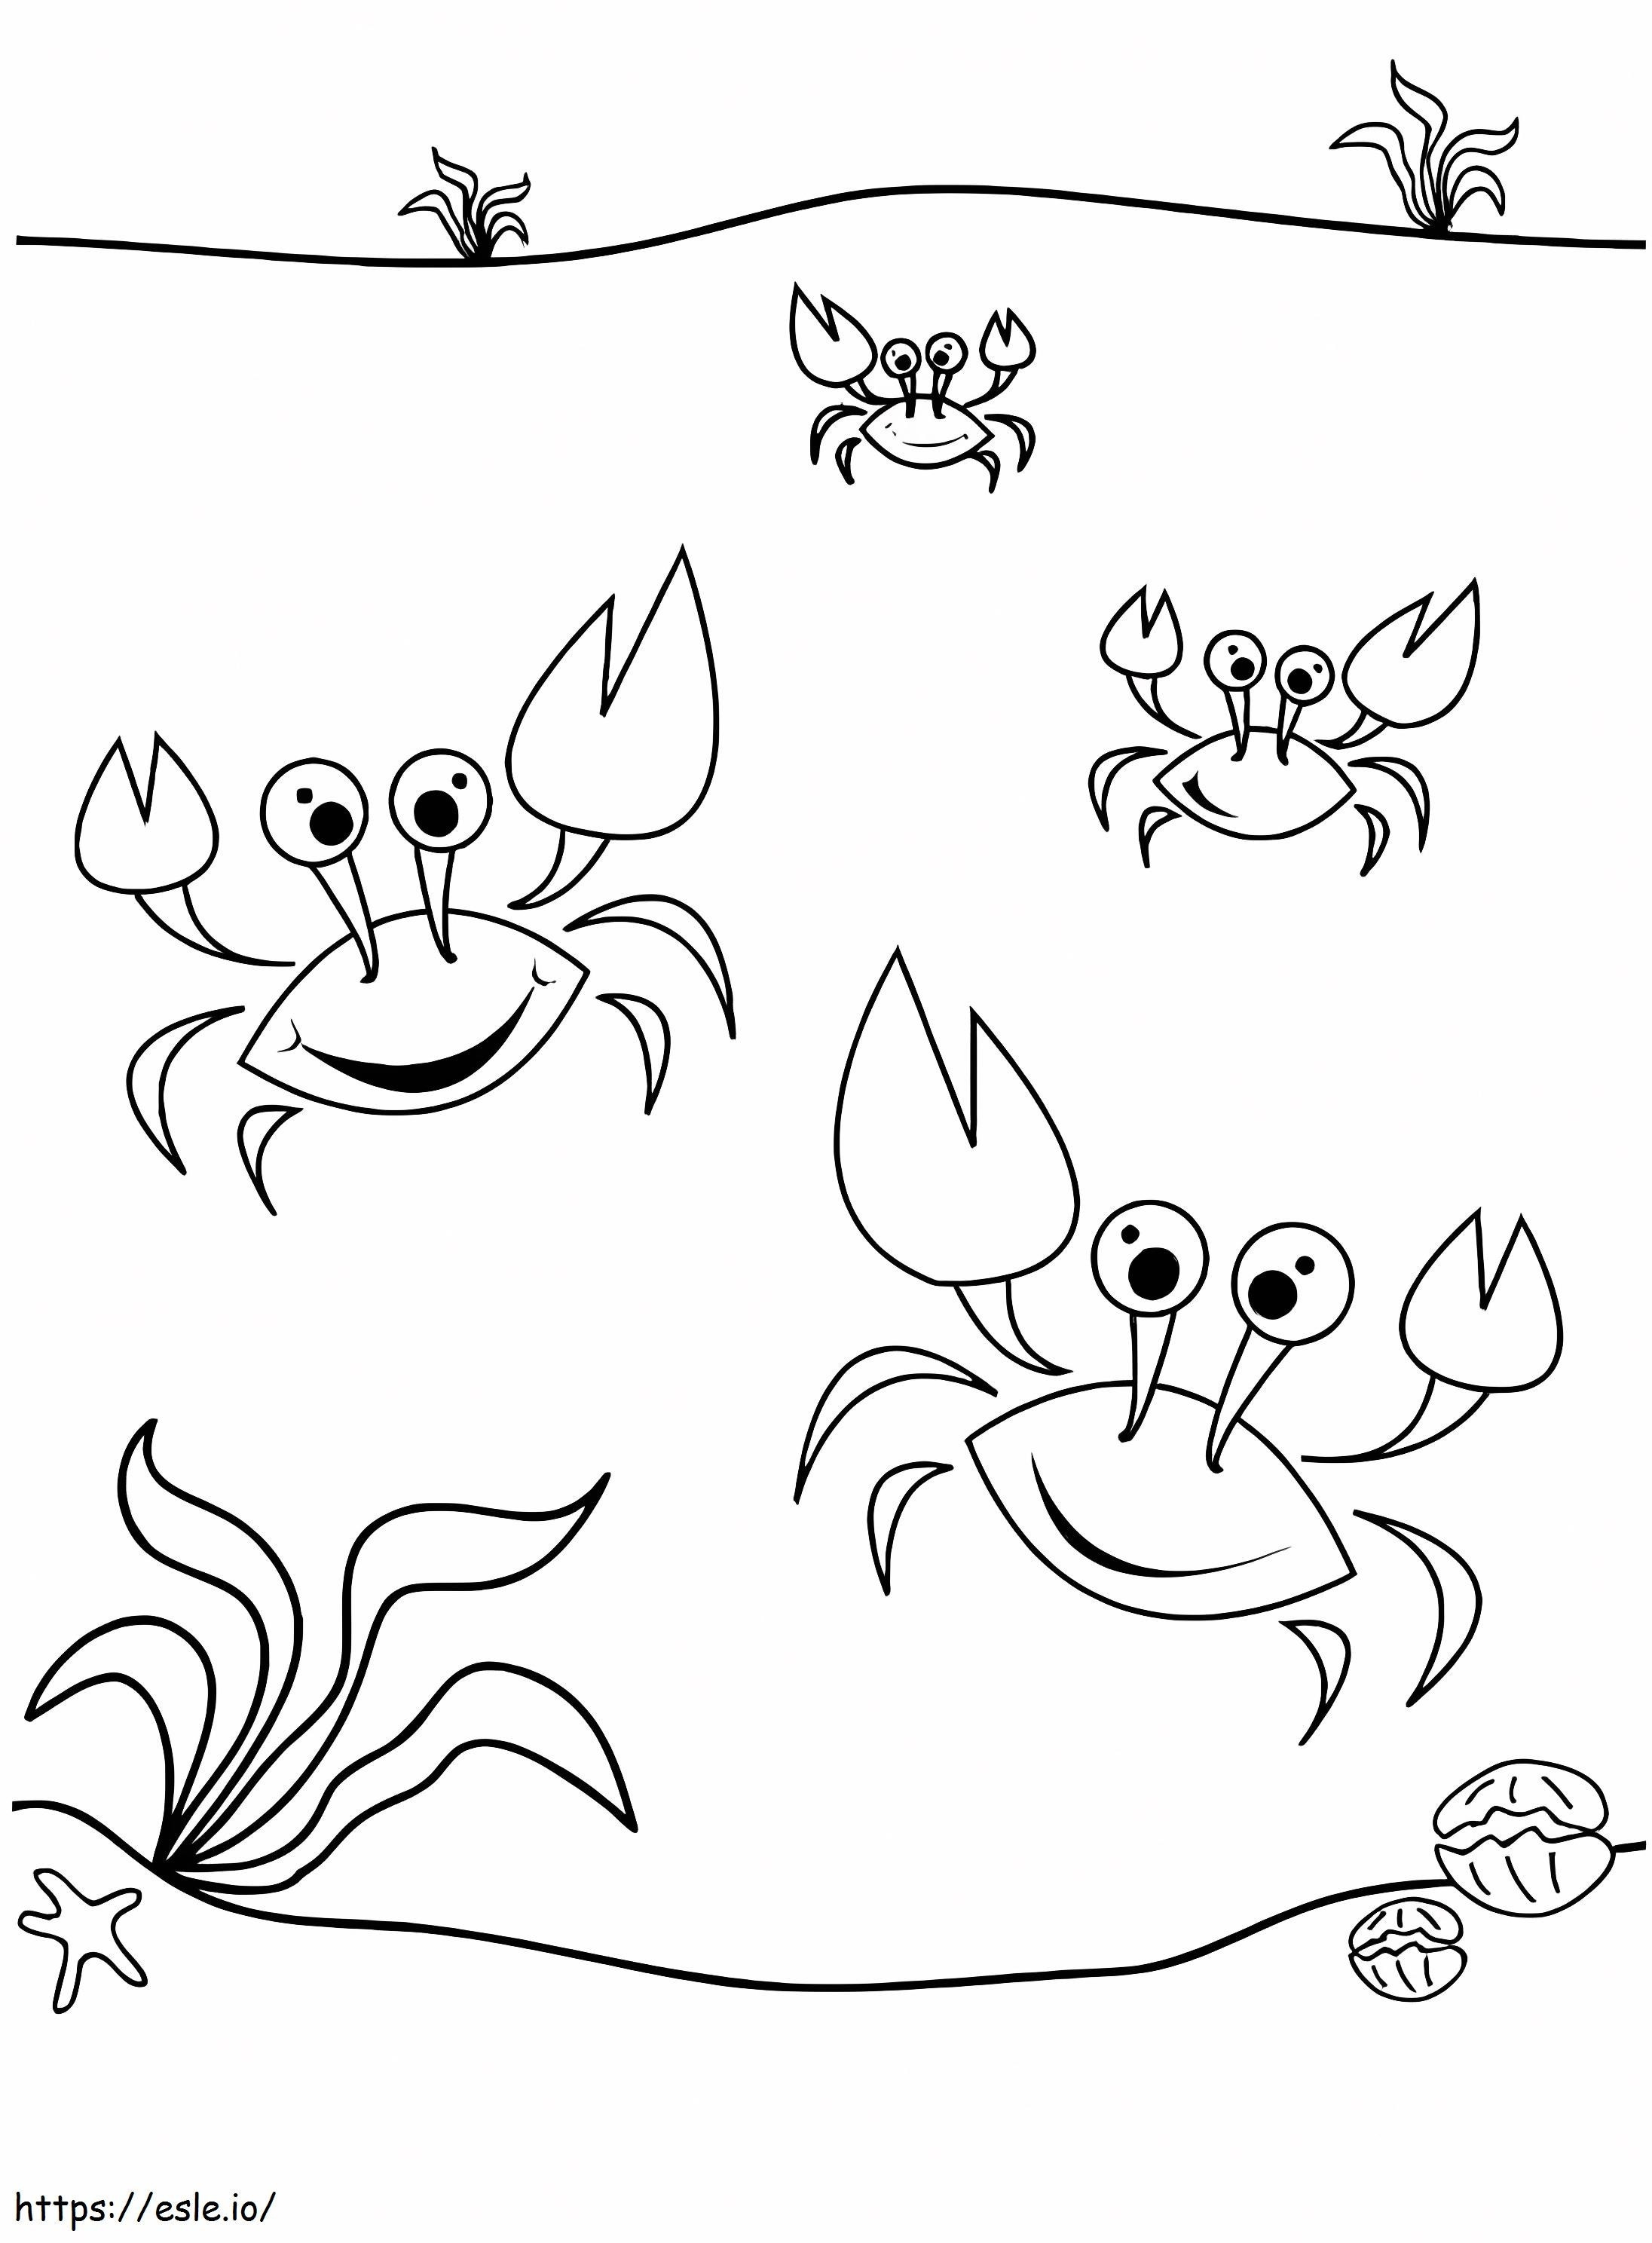 Vier tanzende Krabben ausmalbilder